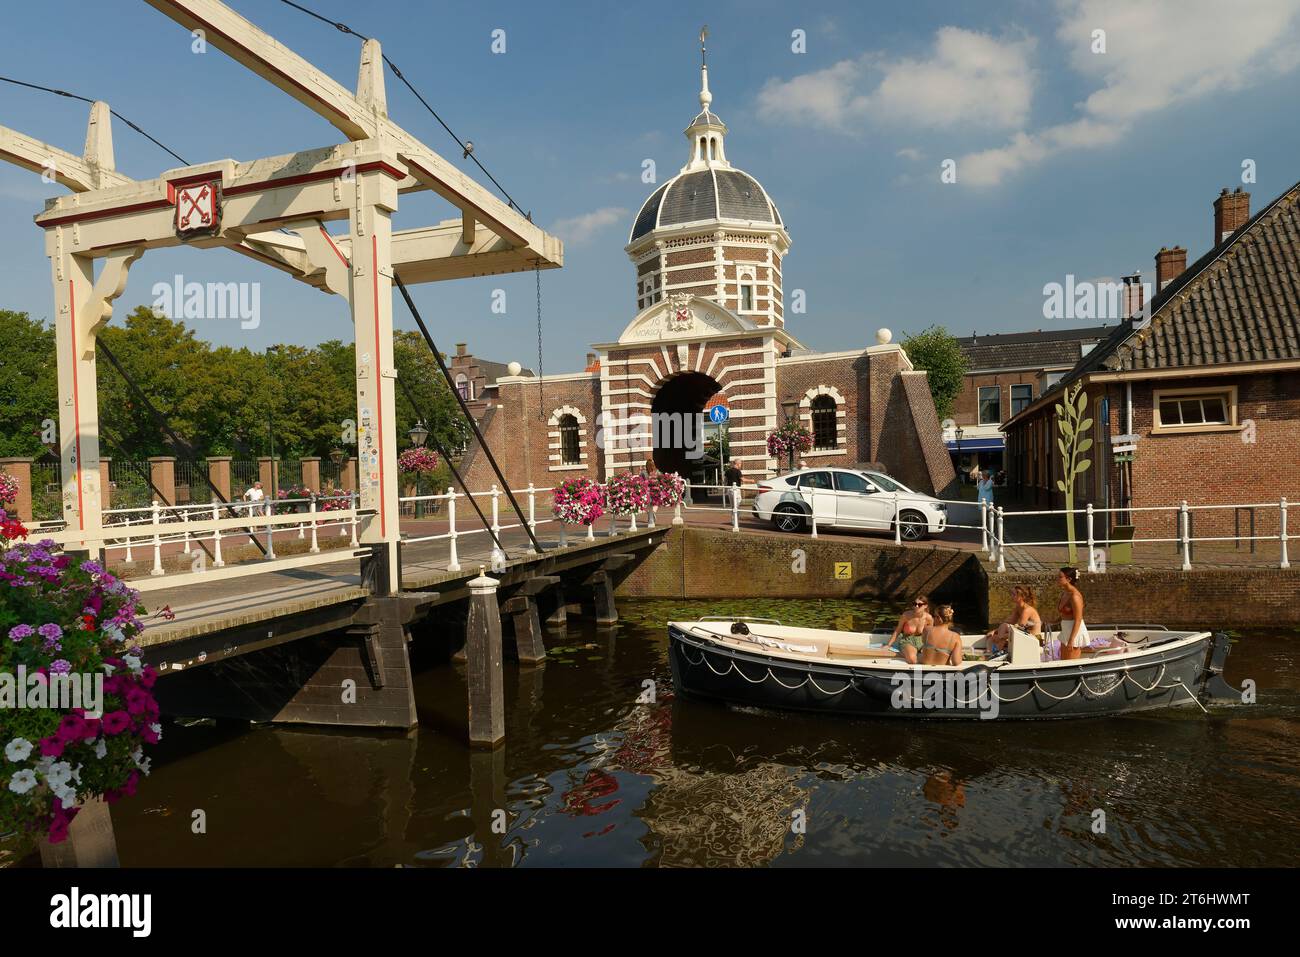 Blick auf Morspoort mit Morspoortbrug in Leiden / Leyden, Süd-Holland, Zuid-Holland, Benelux-Länder, Niederlande, Nederland Stockfoto